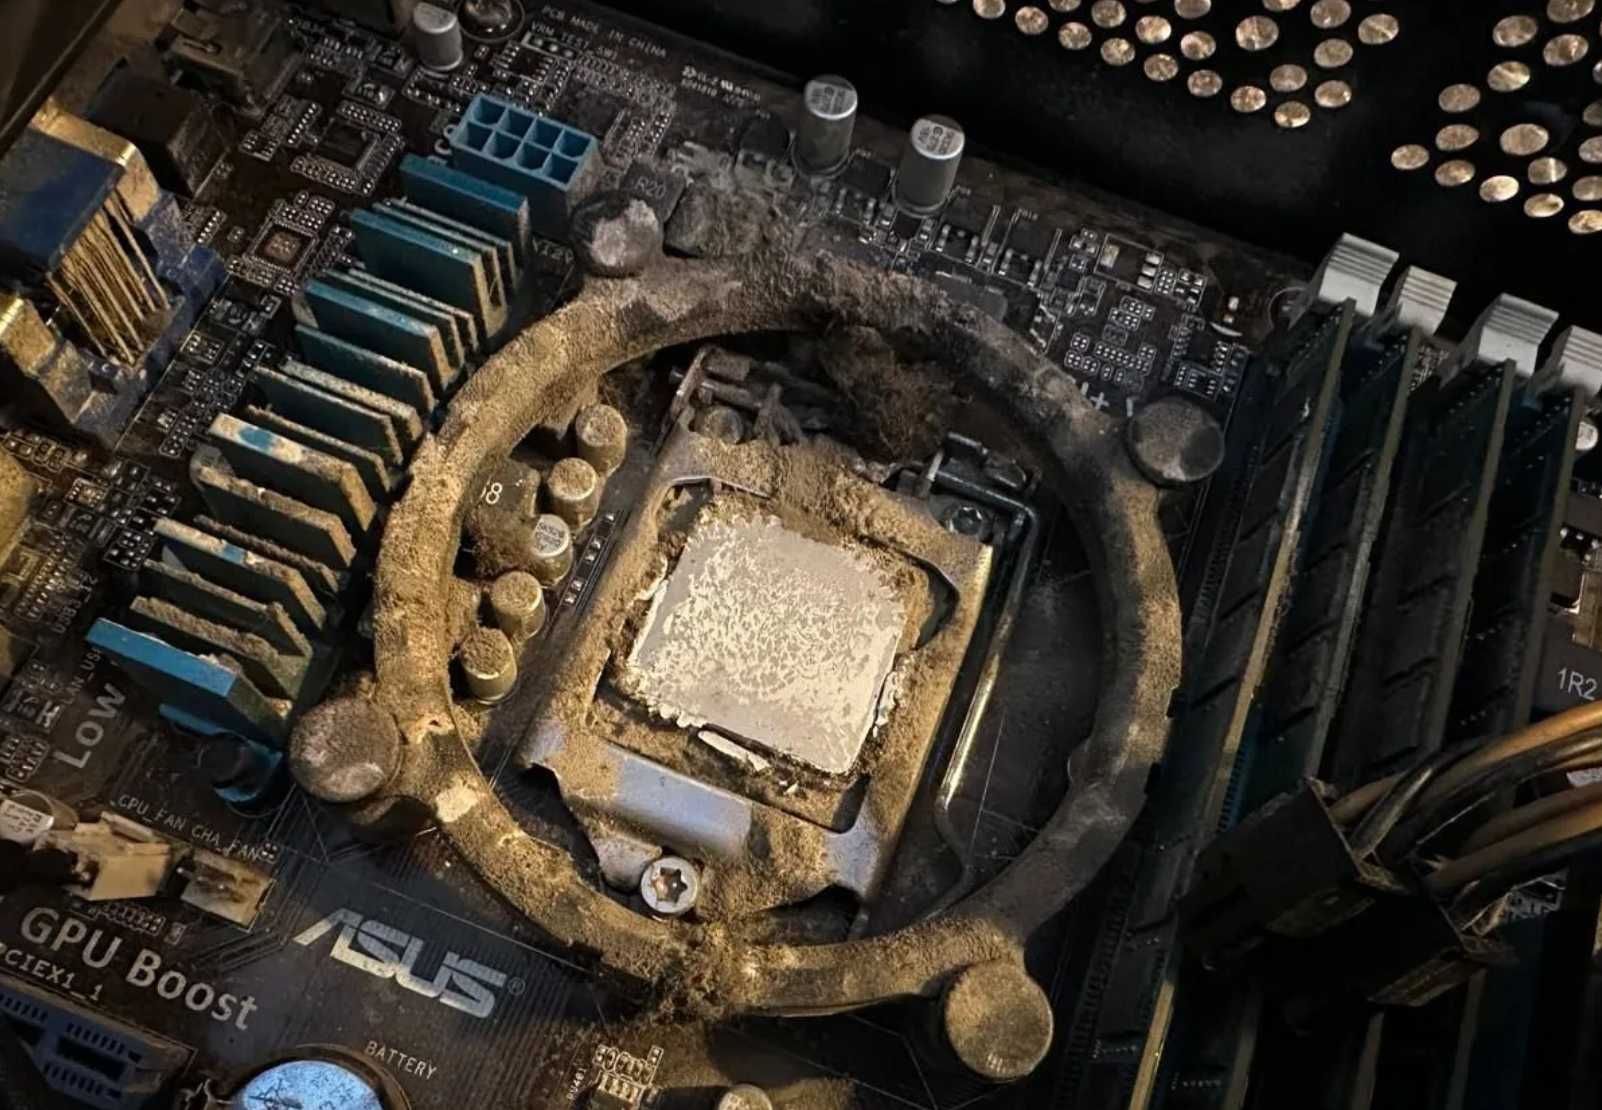 Мастер по ремонту компьютеров чистка ноутбуков. Установка Windows и ПО